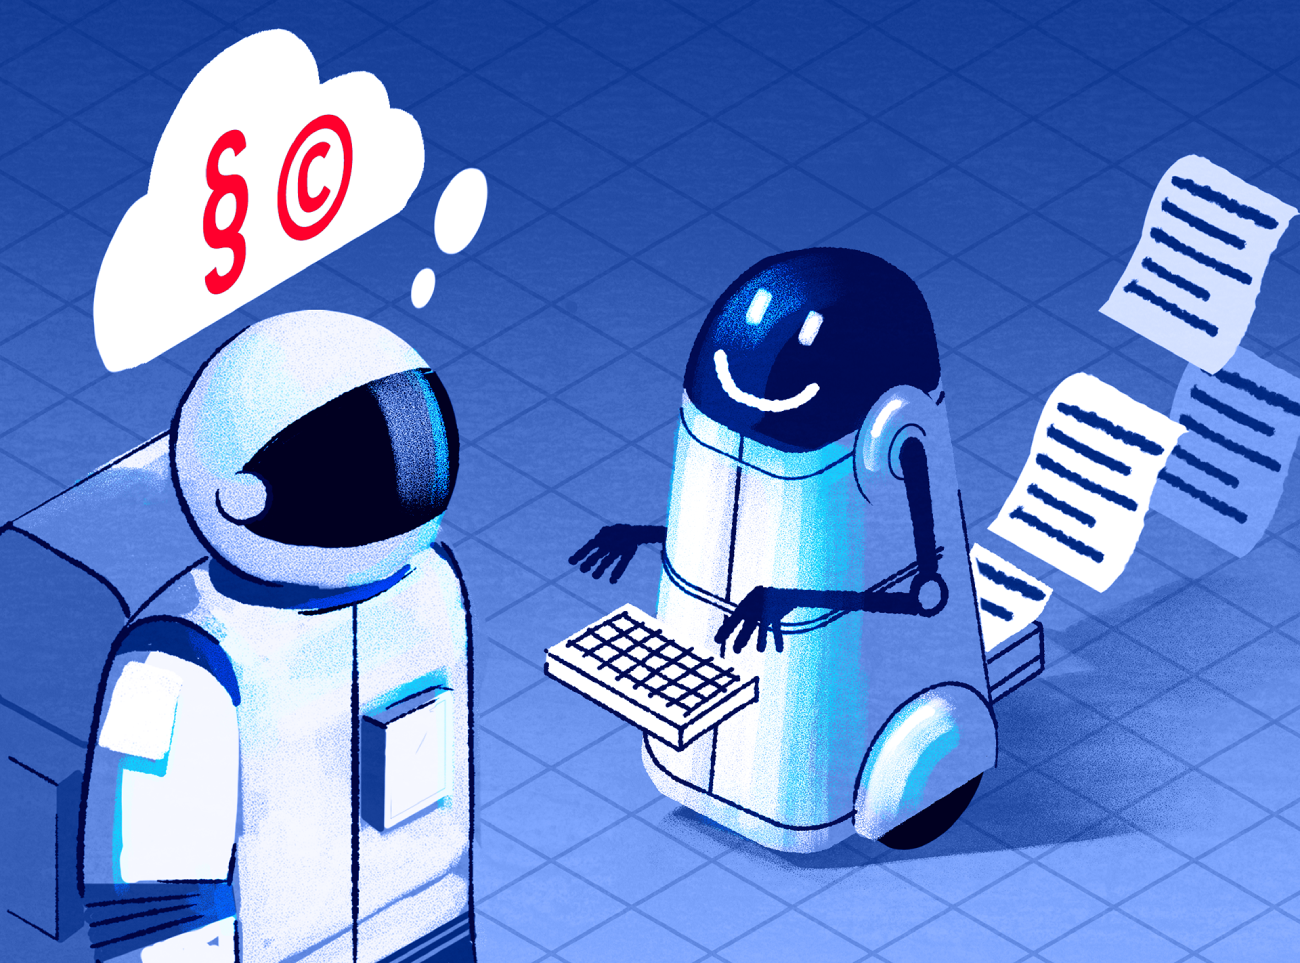 Illustration von einem Roboter, der gedruckte Texte produziert und mit einem Astronauten interagiert